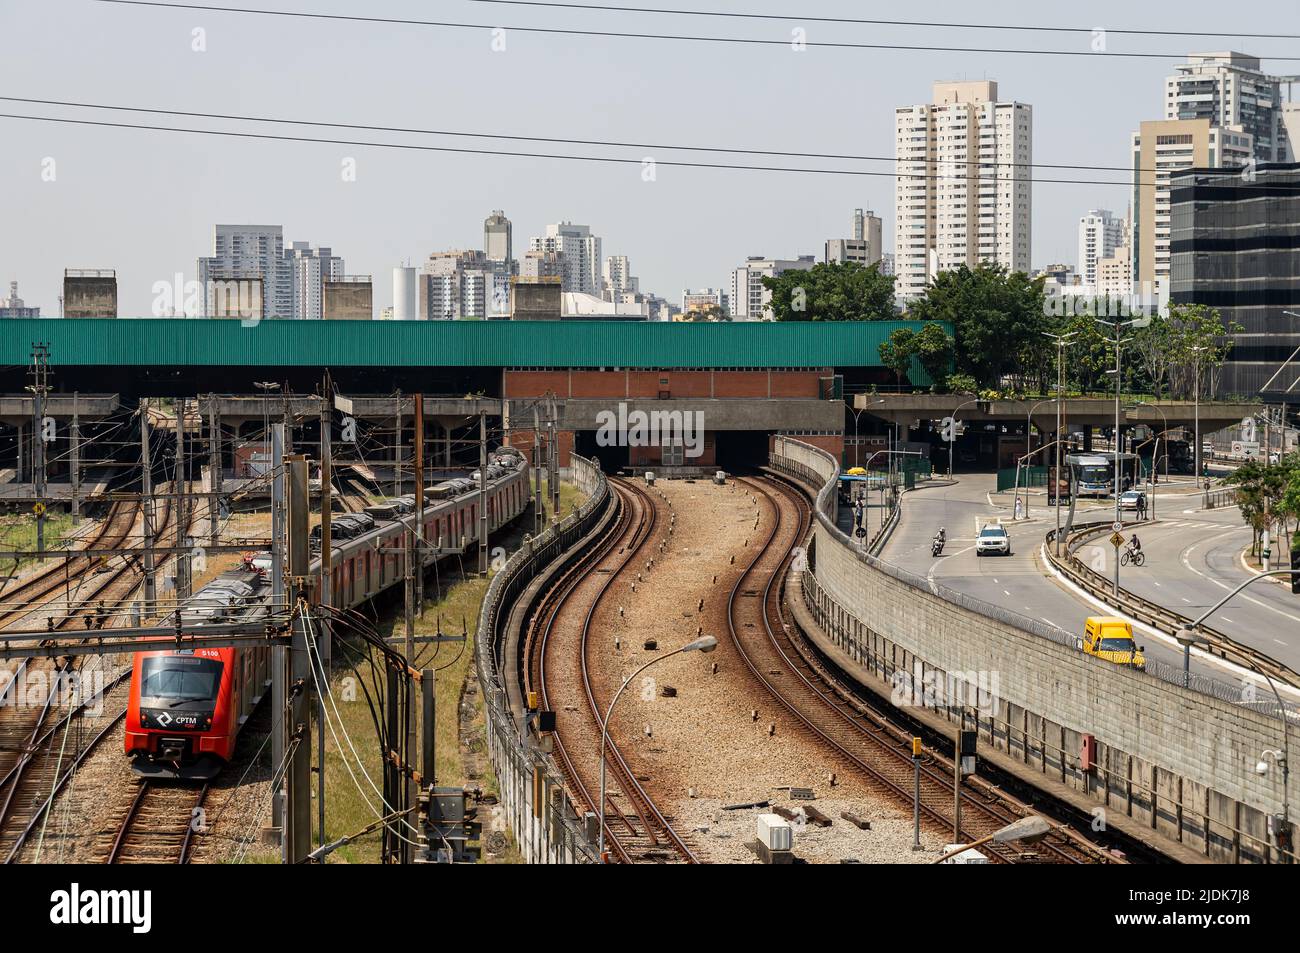 Vista sul lato ovest della stazione di Palmeiras-barra Funda con vista parziale dei binari del treno e del viale Mario de Andrade sotto il cielo azzurro e soleggiato. Foto Stock